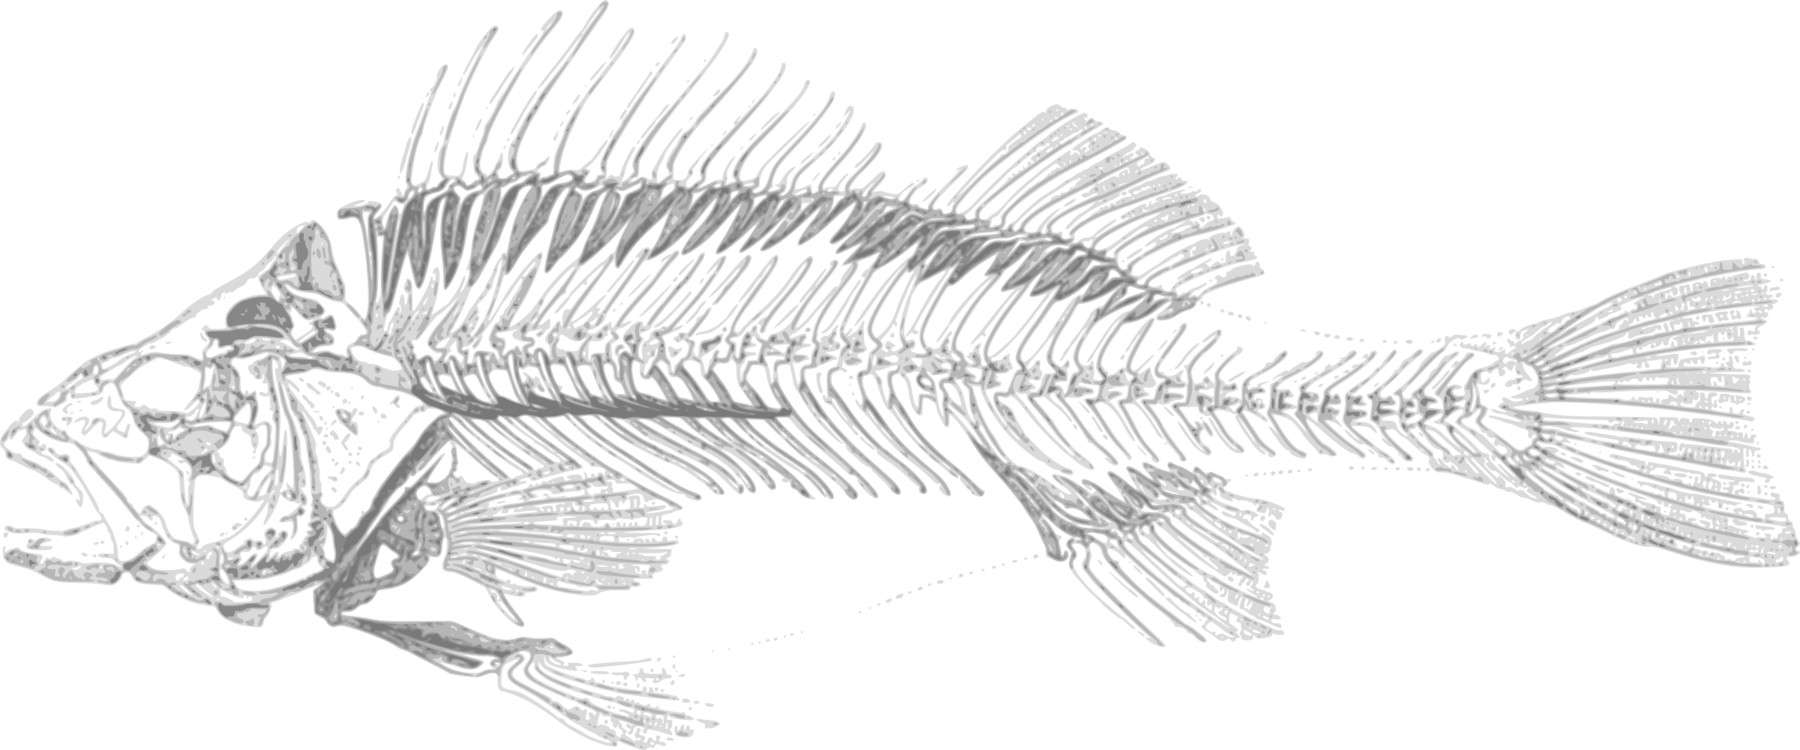 Fish Skeleton Illustration PNG